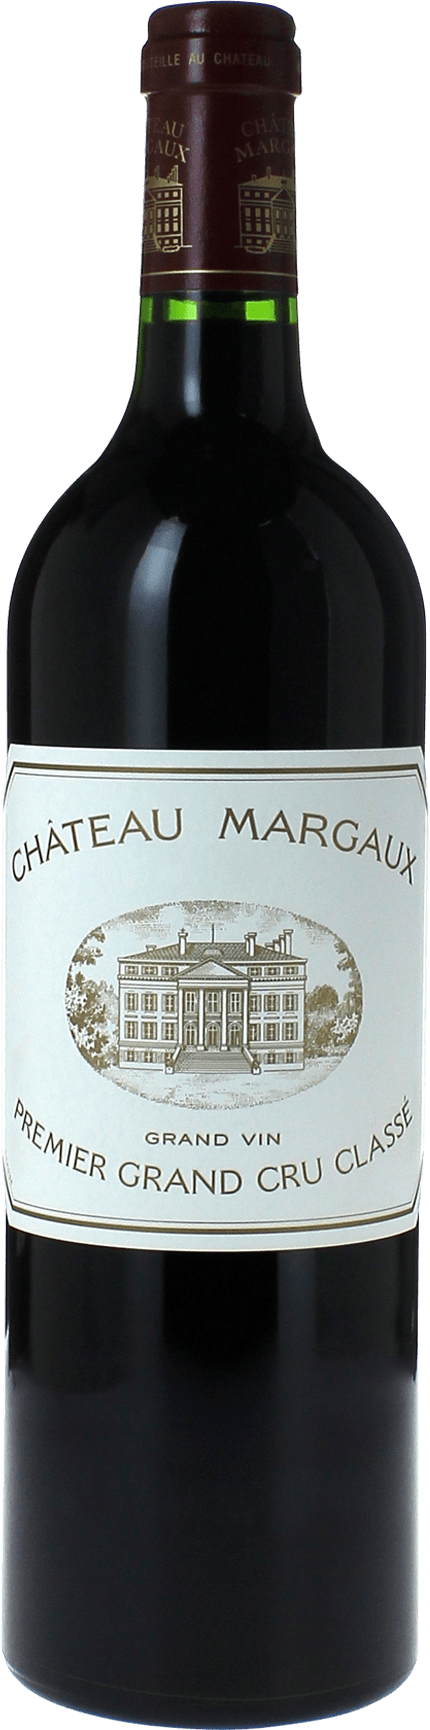 Margaux 1997 1er Grand cru class Margaux, Bordeaux rouge